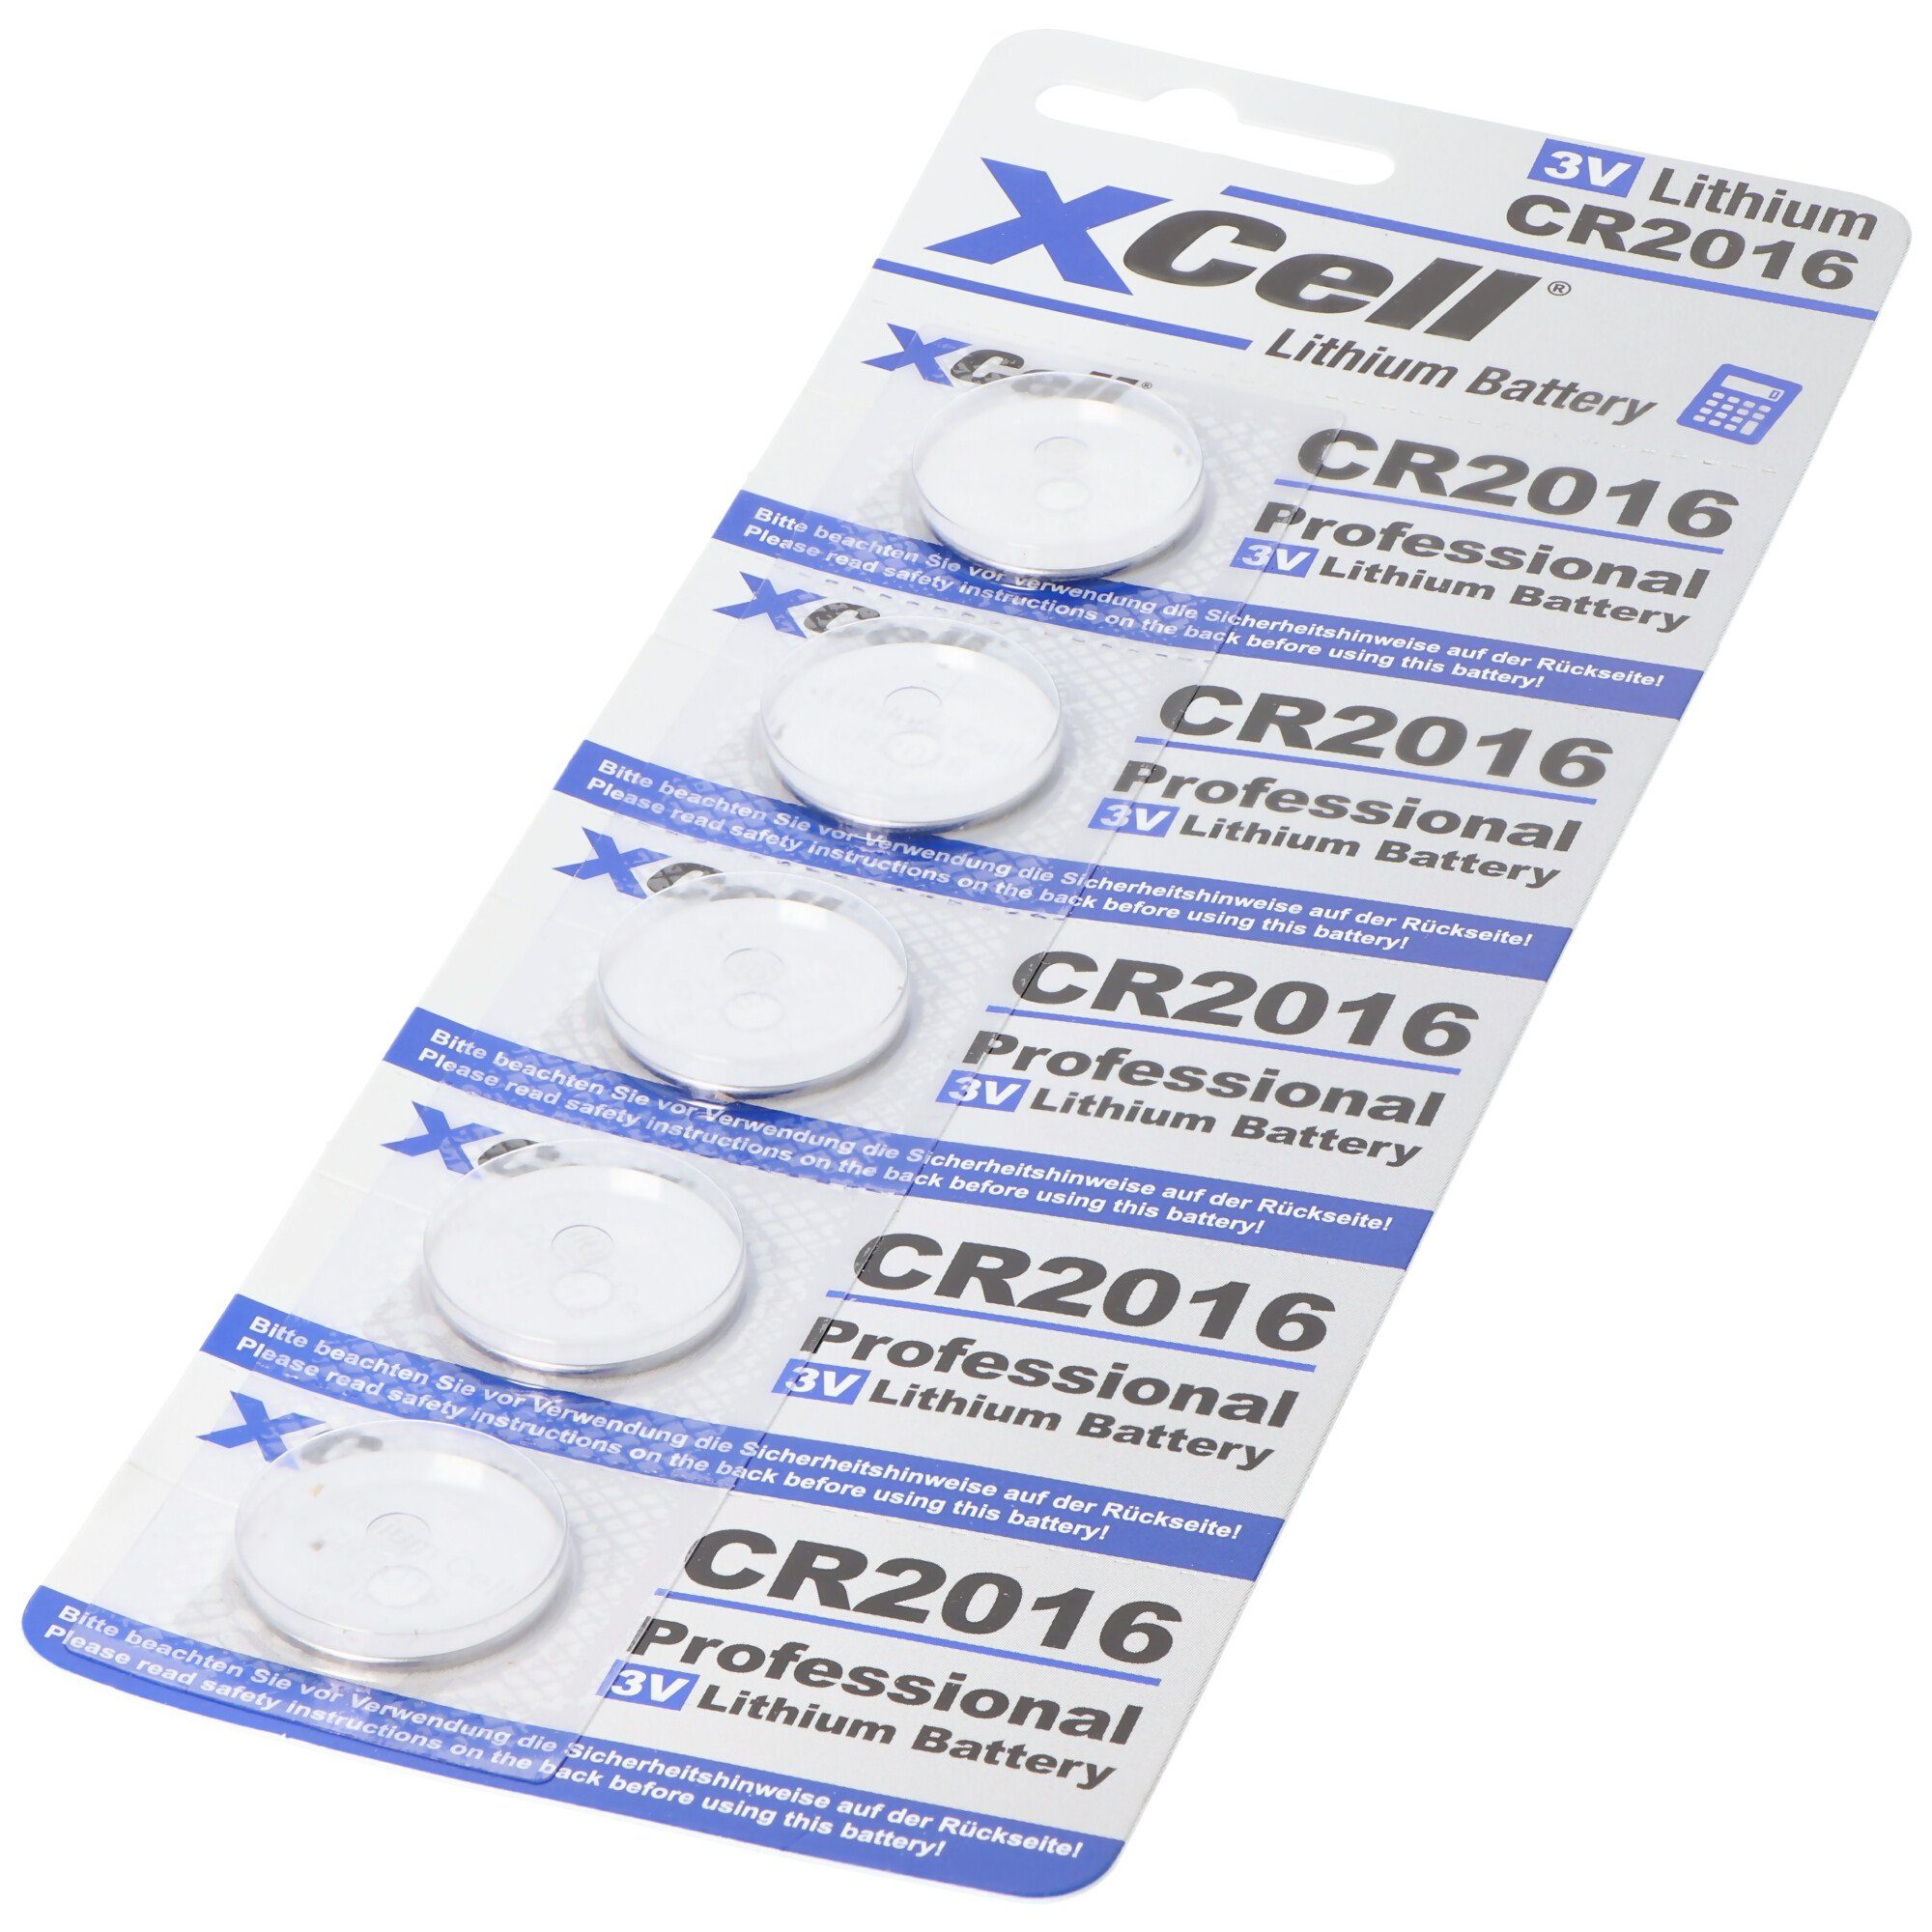 XCell 5er-Sparset CR2016 Lithium Batterie, 3V, (3,0 V) Batterien praktisch im Batterie CR2016